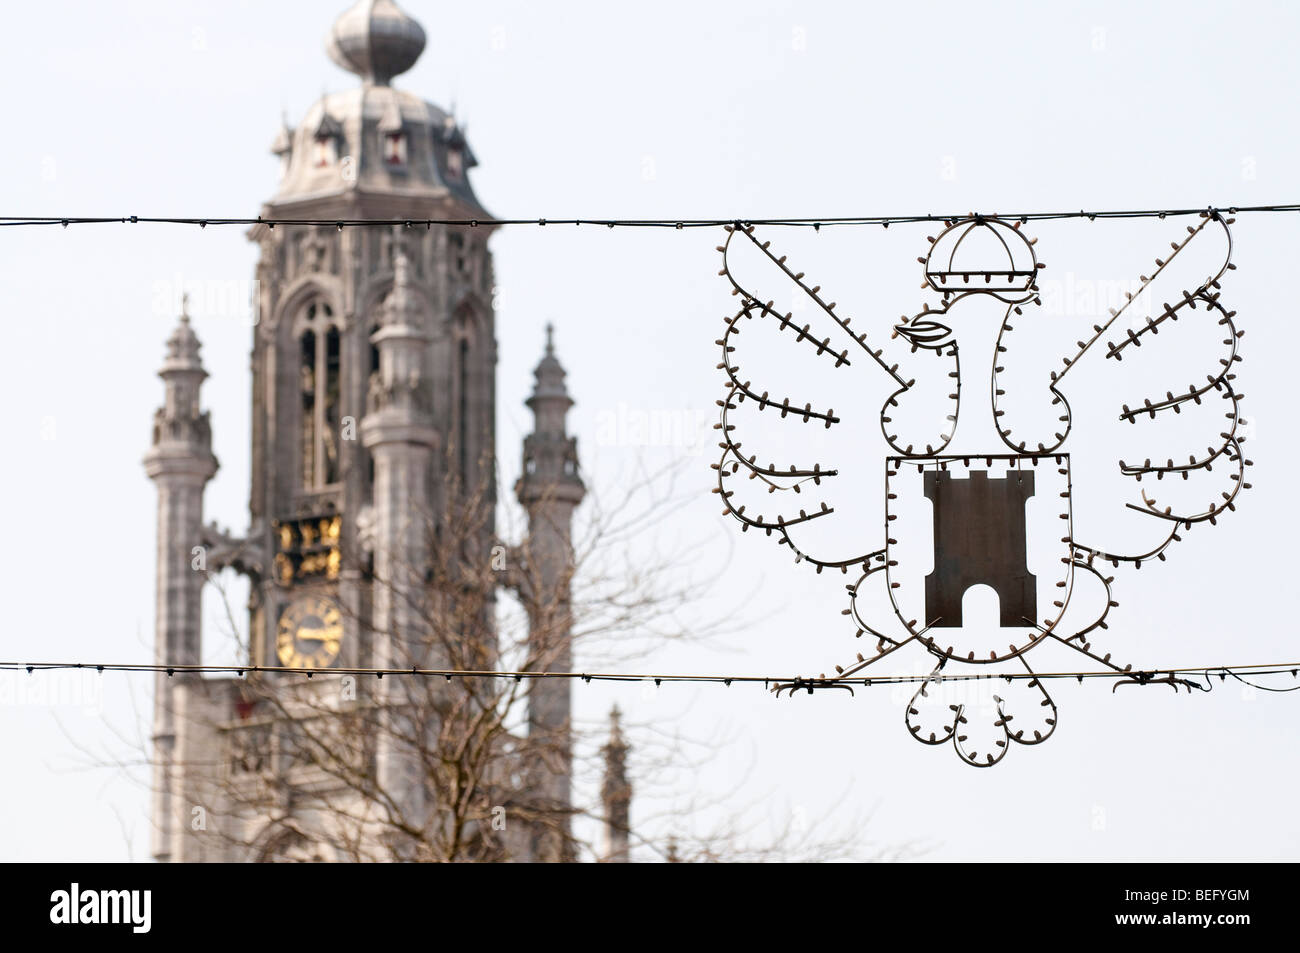 Un câblage en la forme de l'emblème de Middelburg en face de la tour de l'hôtel de ville de style gothique tardif de Middelburg. Banque D'Images